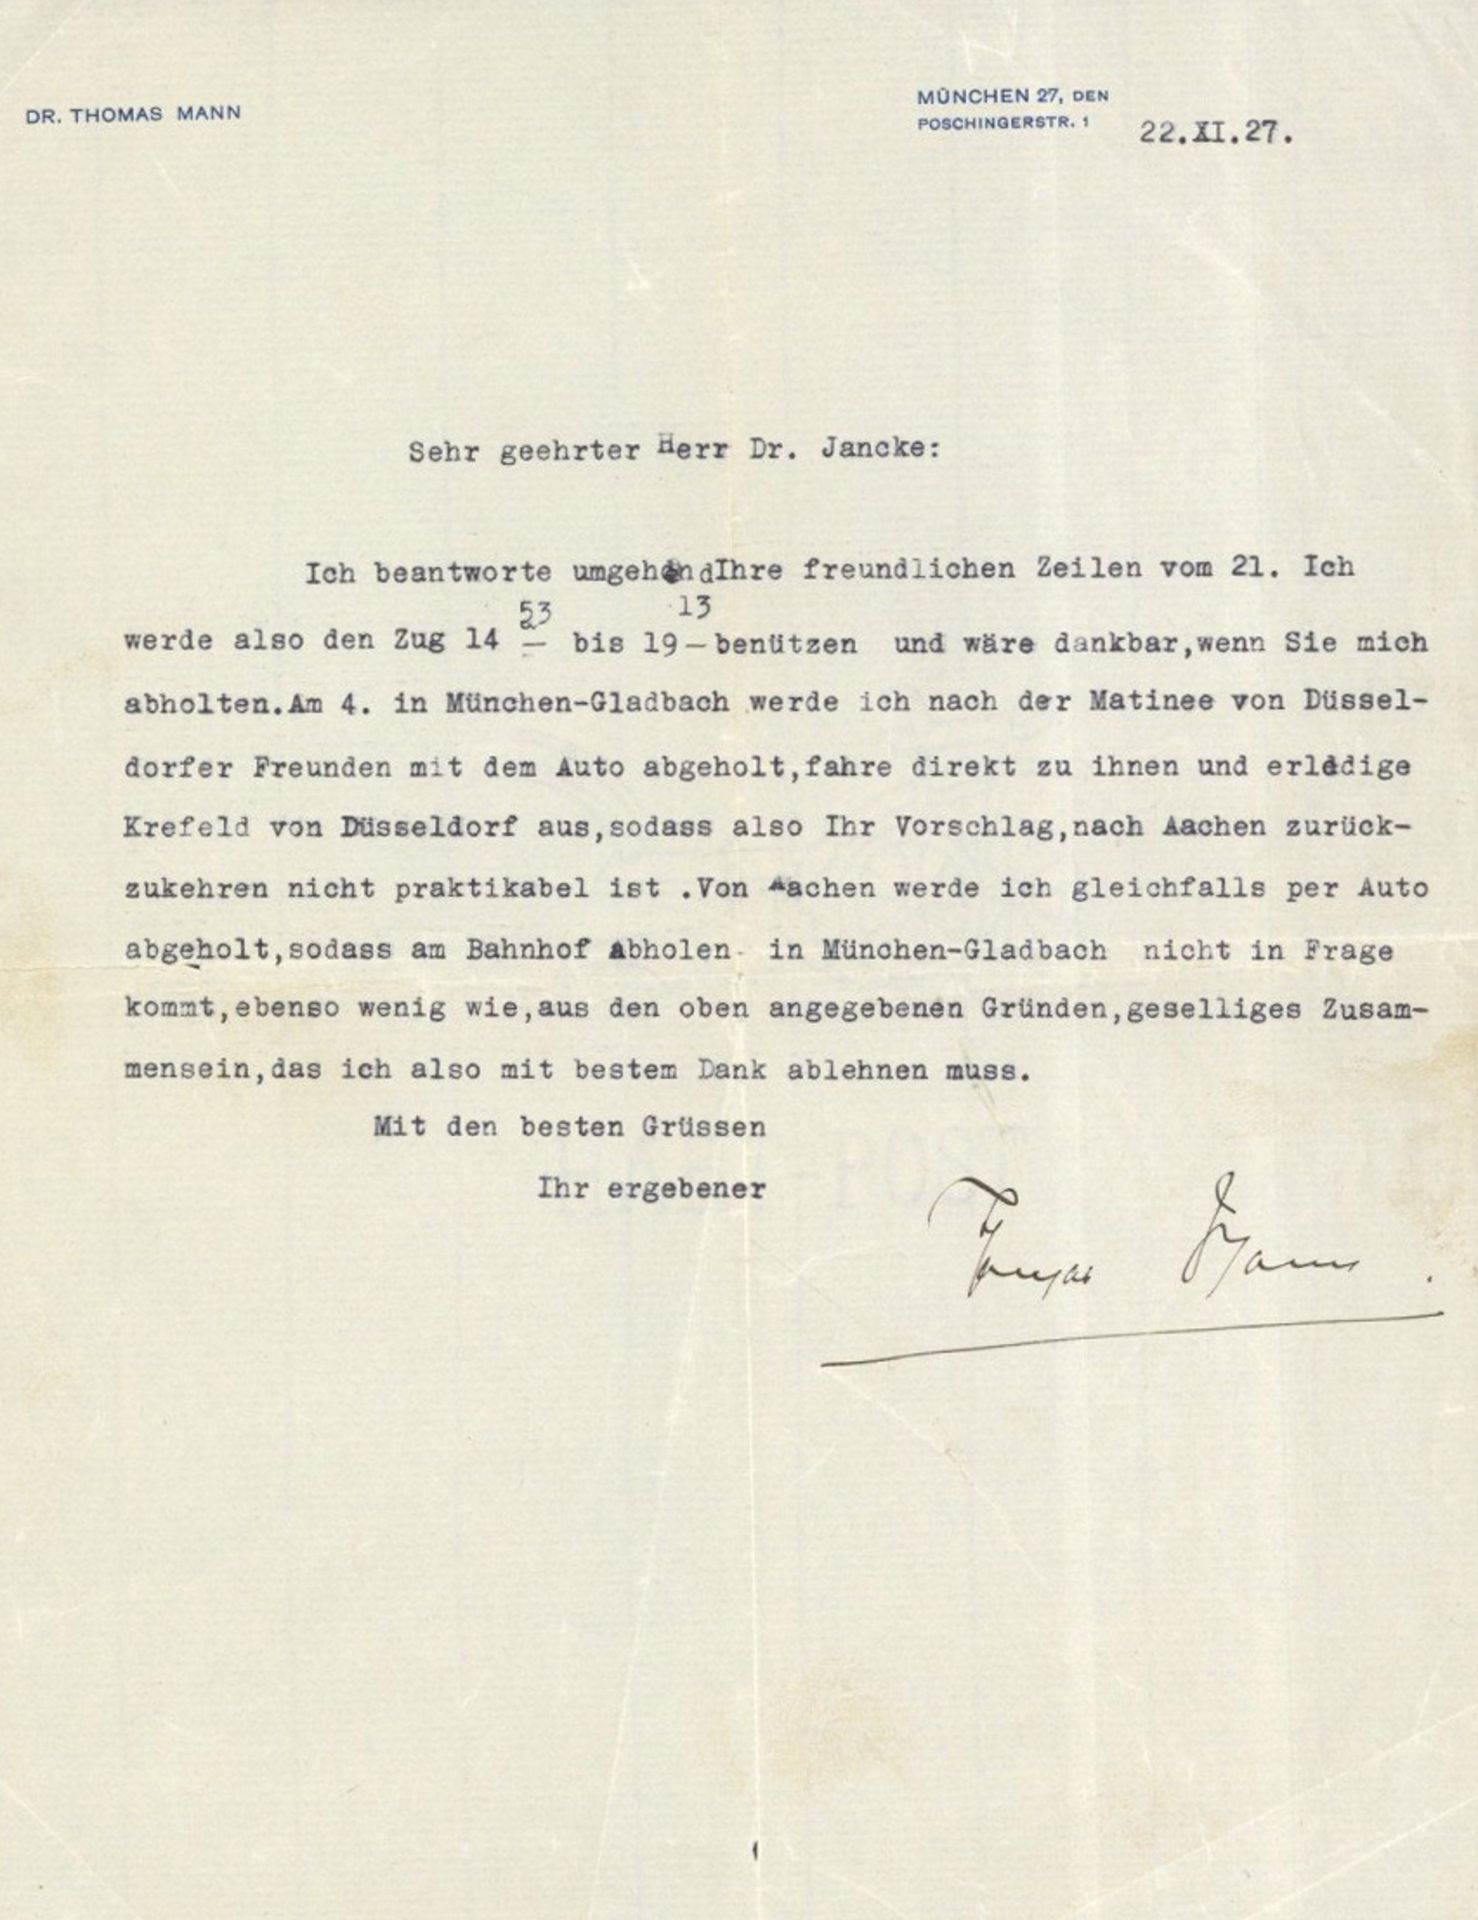 Mann, Thomas (1875-1955) Schriftsteller und Literaturnobelpreisträger, Maschinenbrief mit